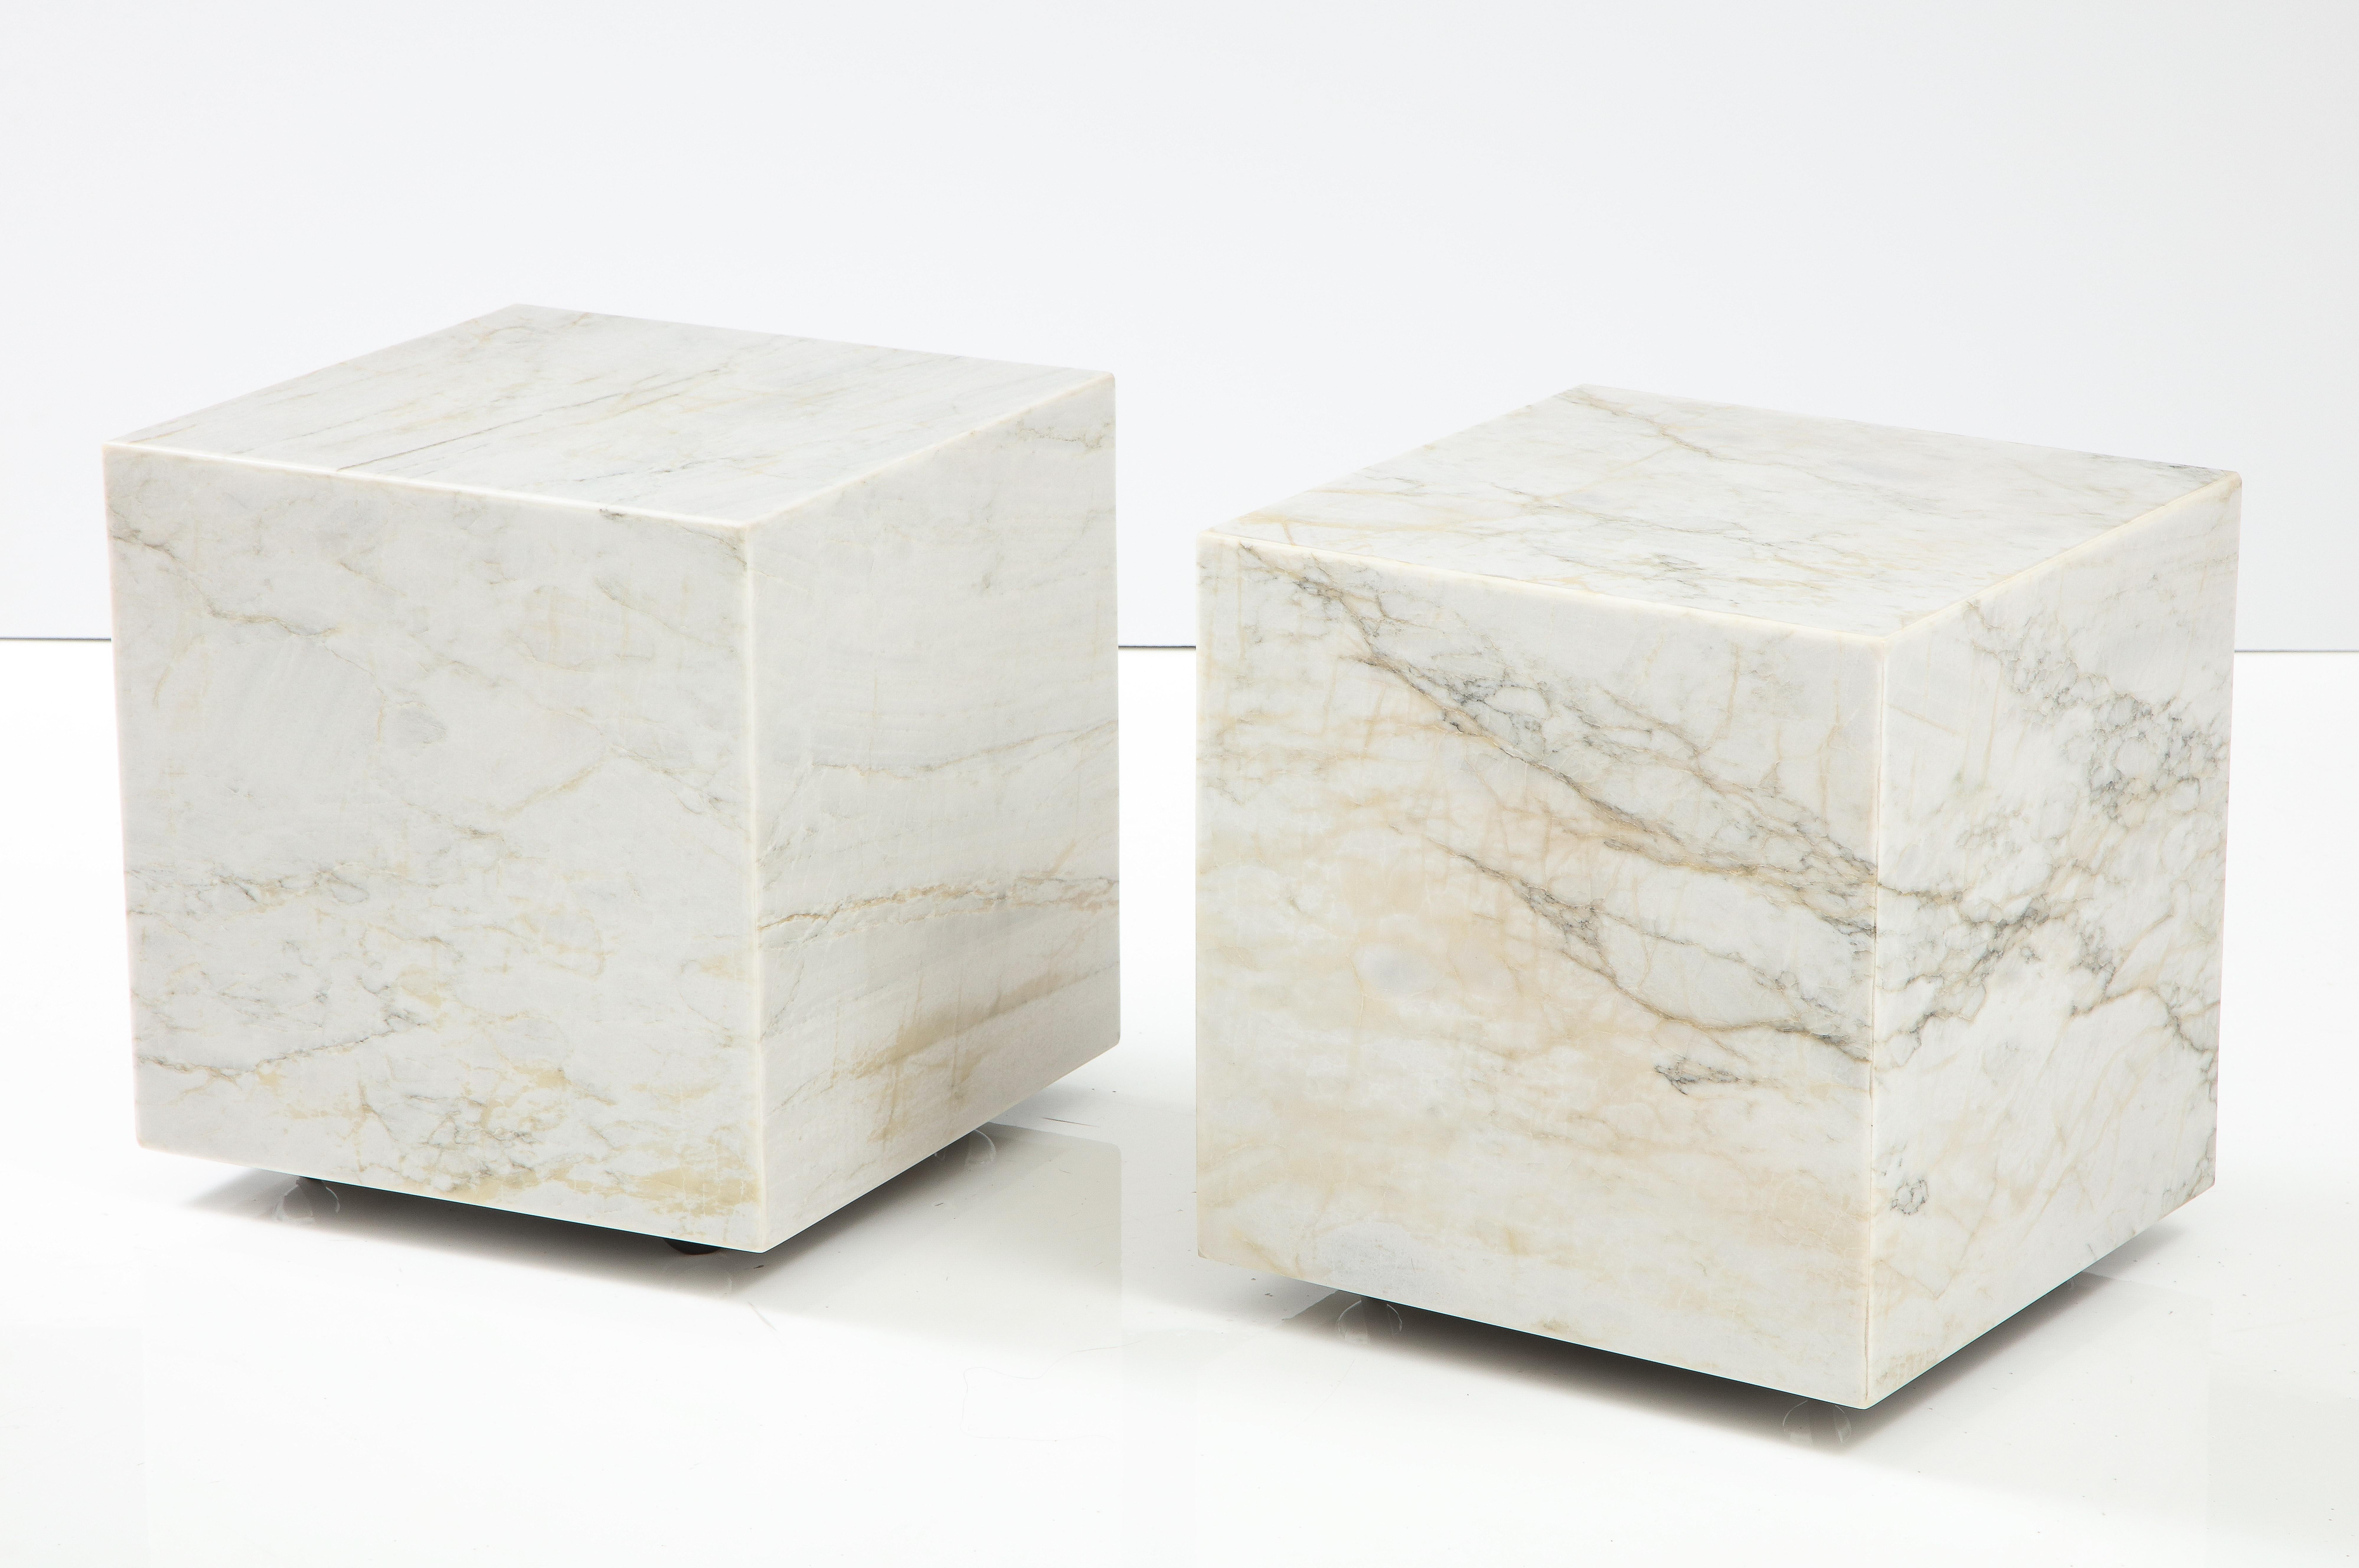 Paire de tables cubiques en marbre blanc.
Le marbre présente de belles veines et elles peuvent être utilisées séparément comme tables d'appoint ou comme tables de travail
réunis pour former une table basse.
Les tables sont équipées de nouvelles